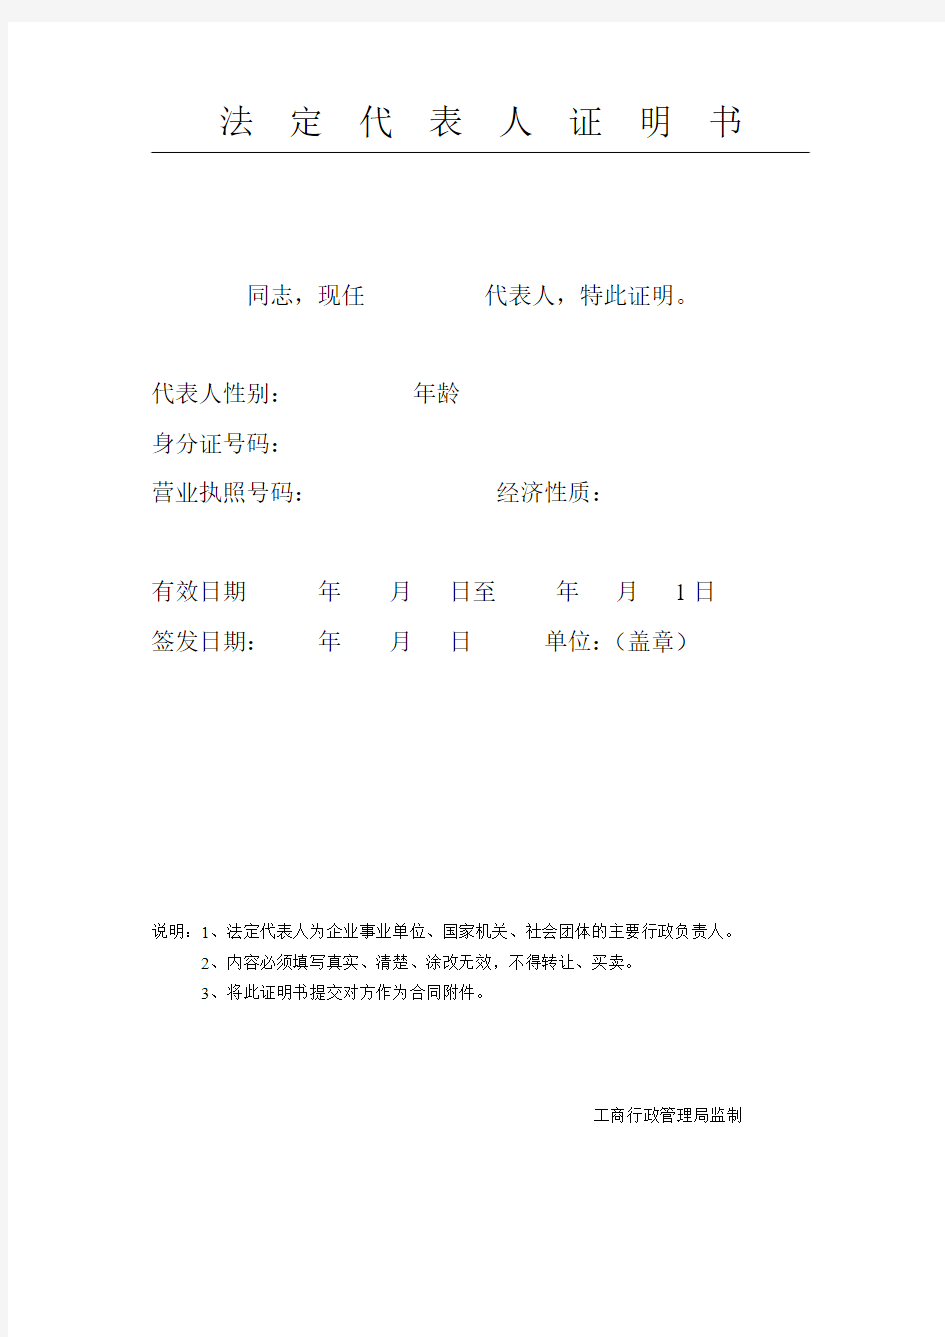 深圳法定代表人证明书和授权委托书